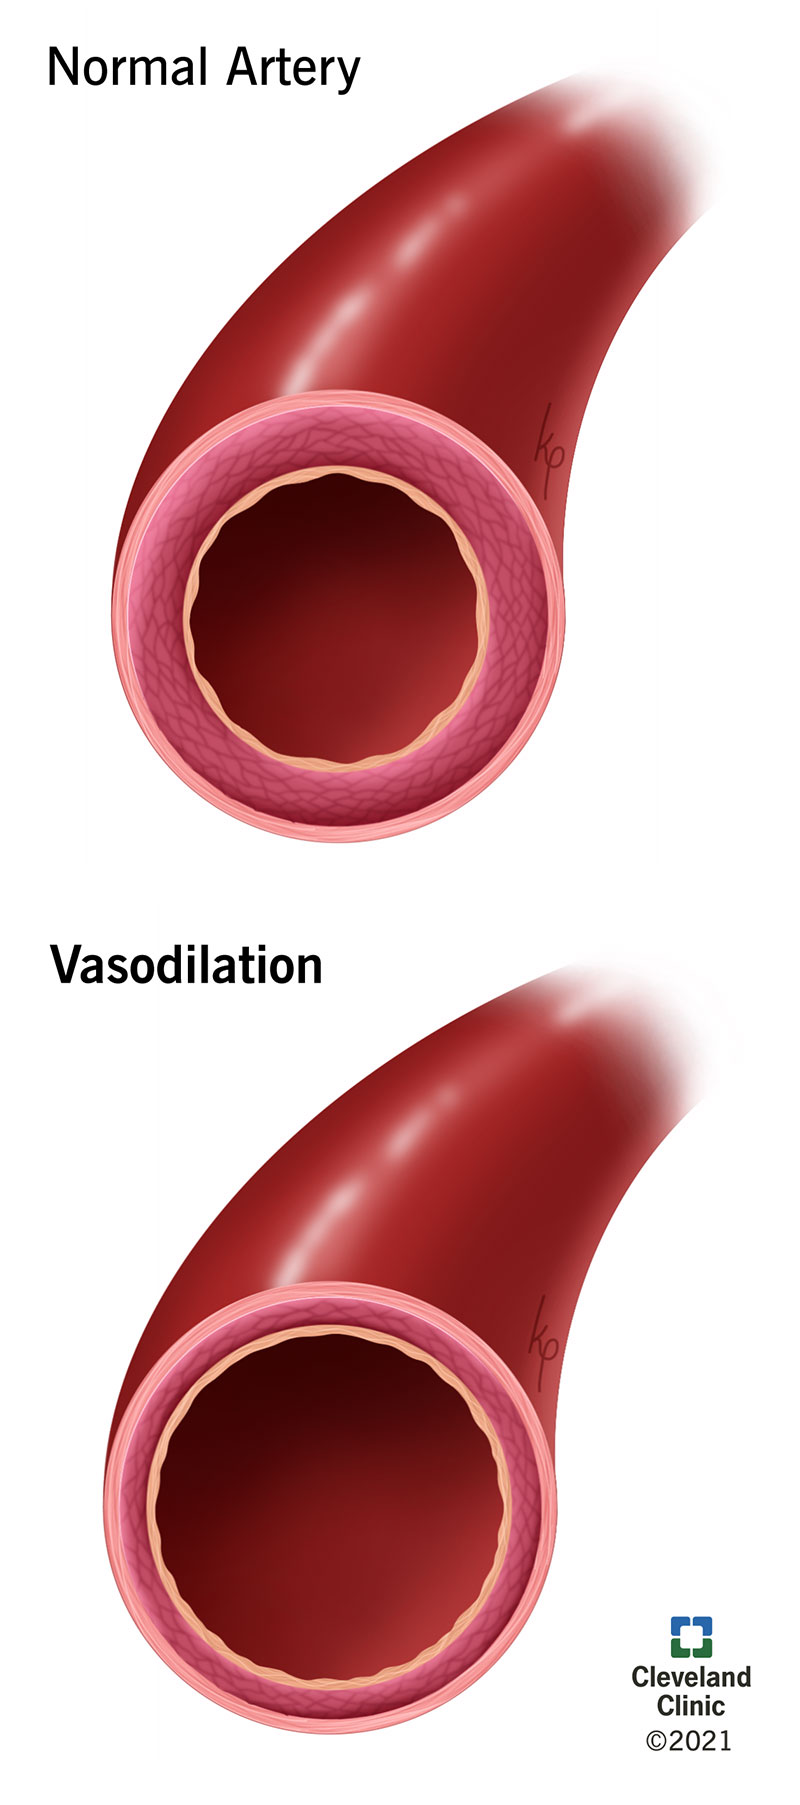 La vasodilatazione provoca l’allargamento del vaso sanguigno interessato, consentendo il flusso di più sangue.